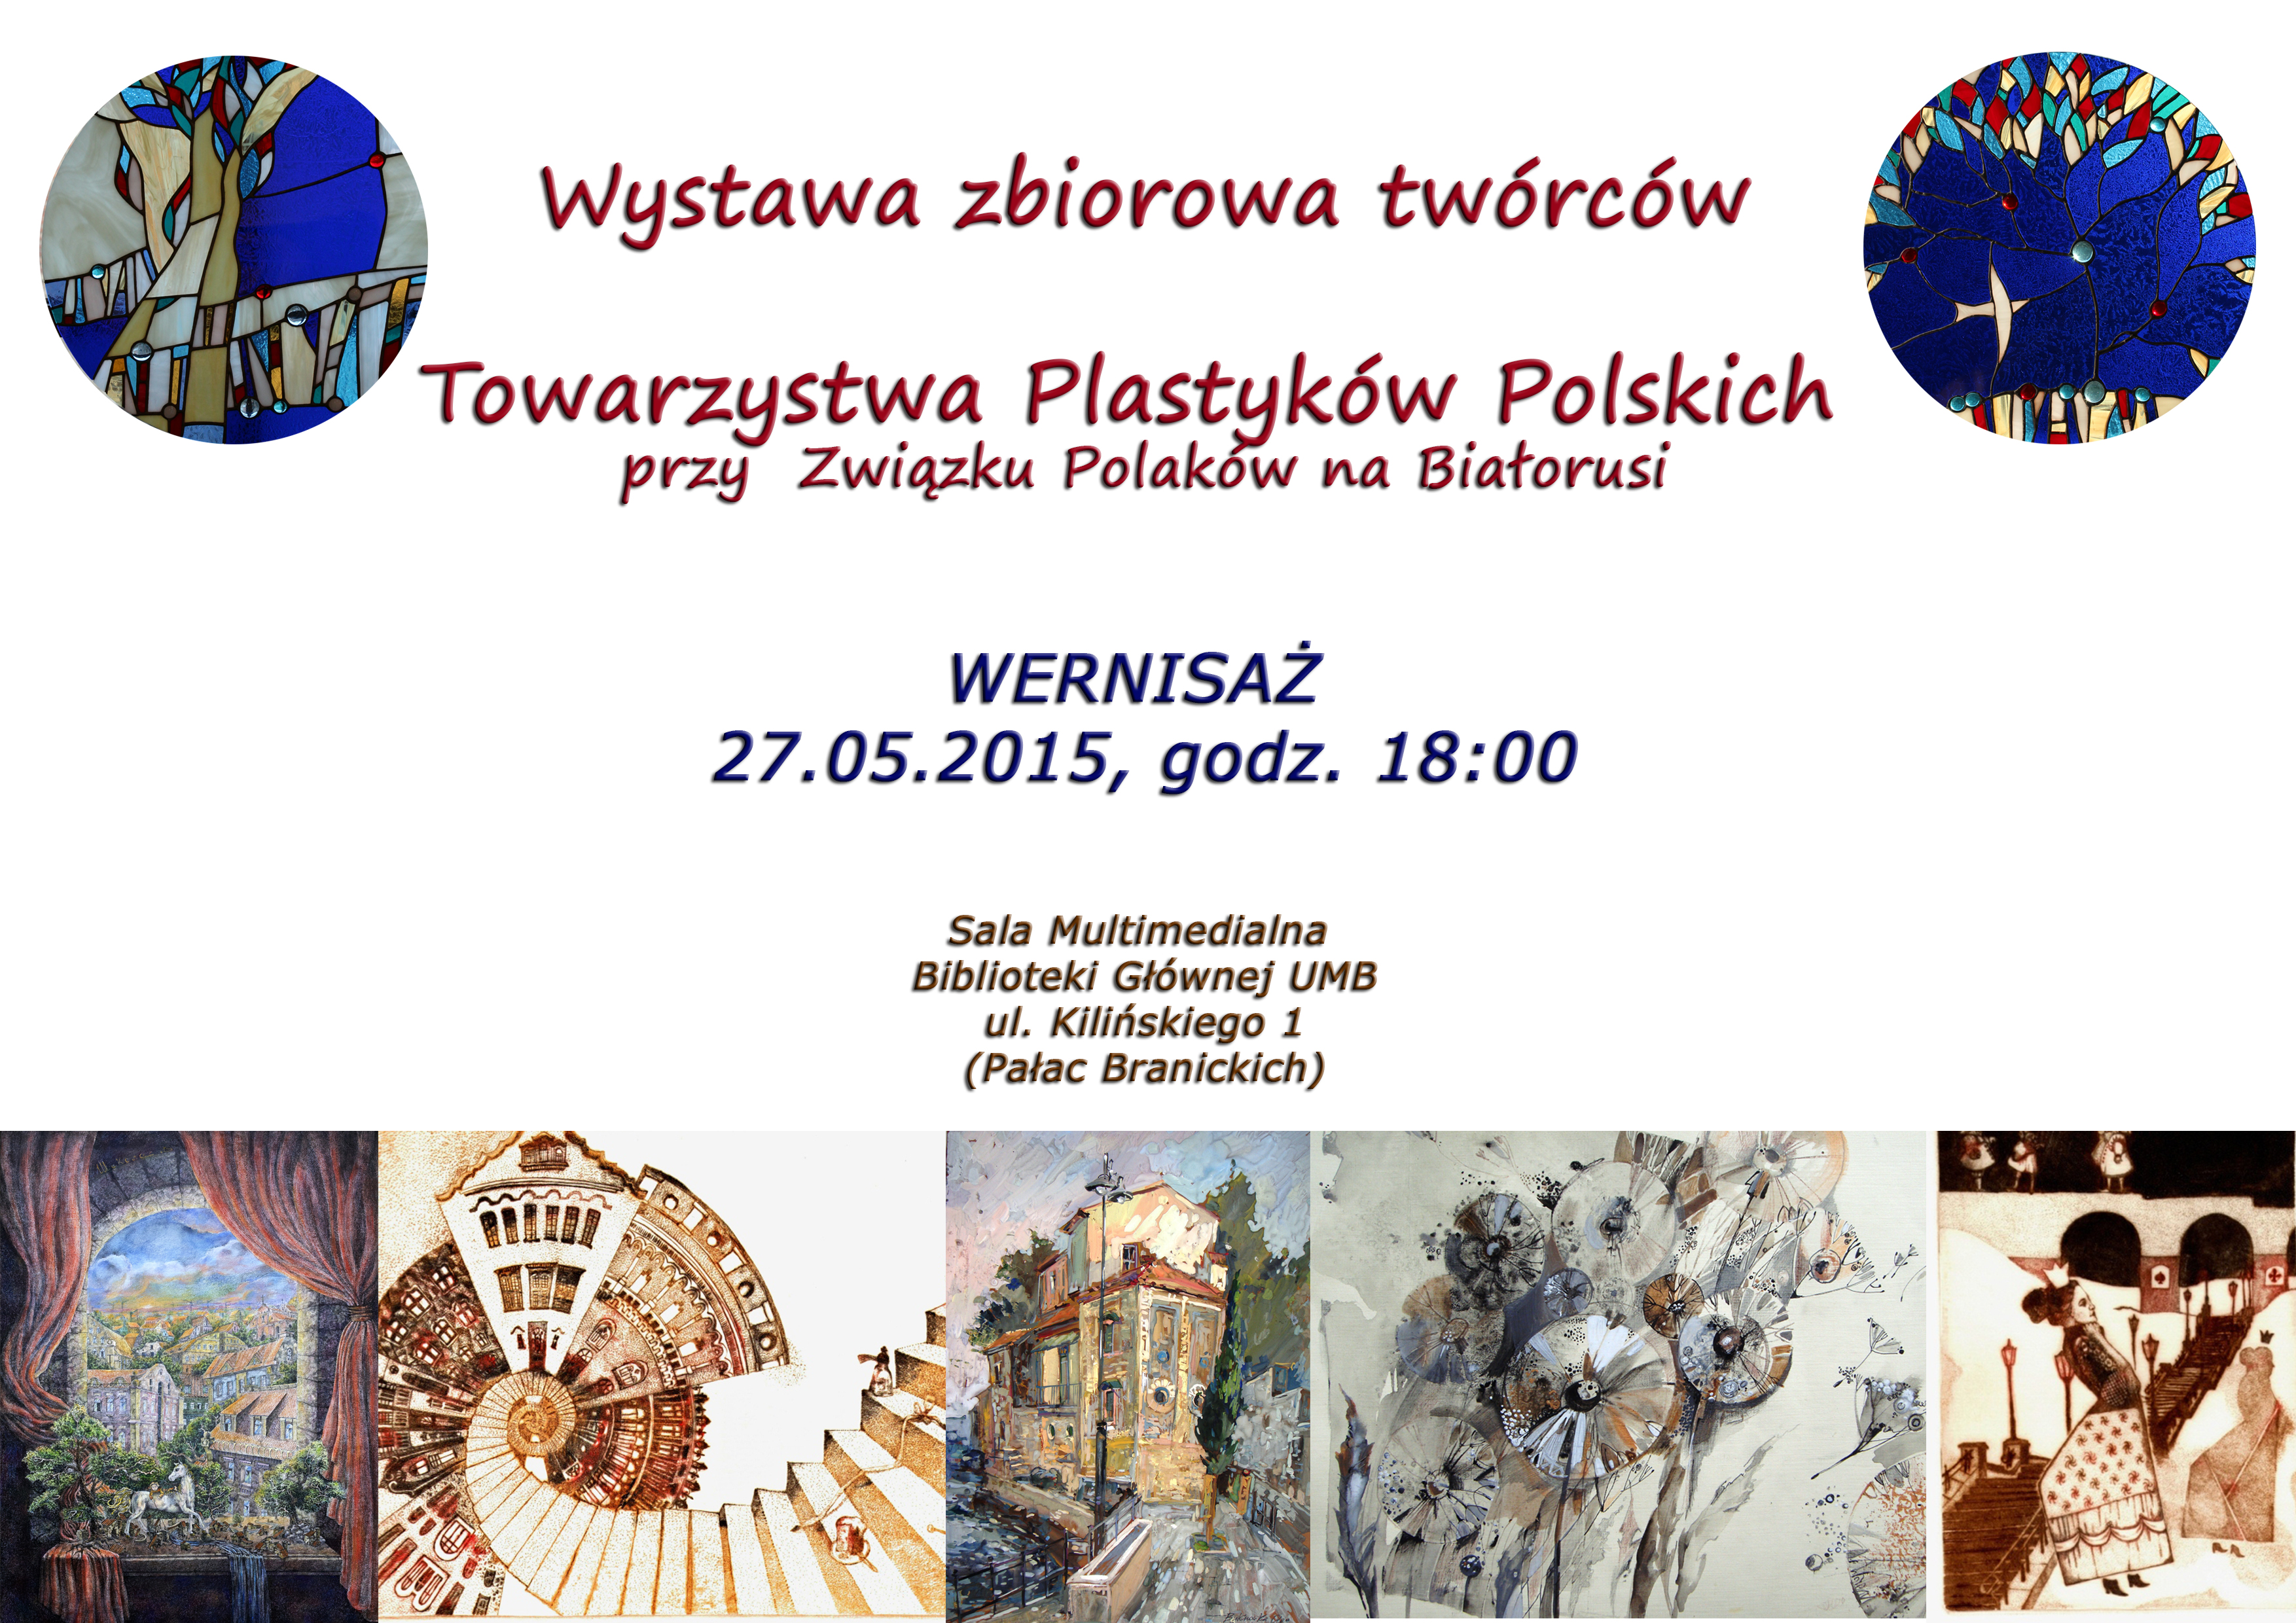 Plakat wystawy Towarzytswa Plastyków Polskcih w Bibliotece UMB - 27.05.2015